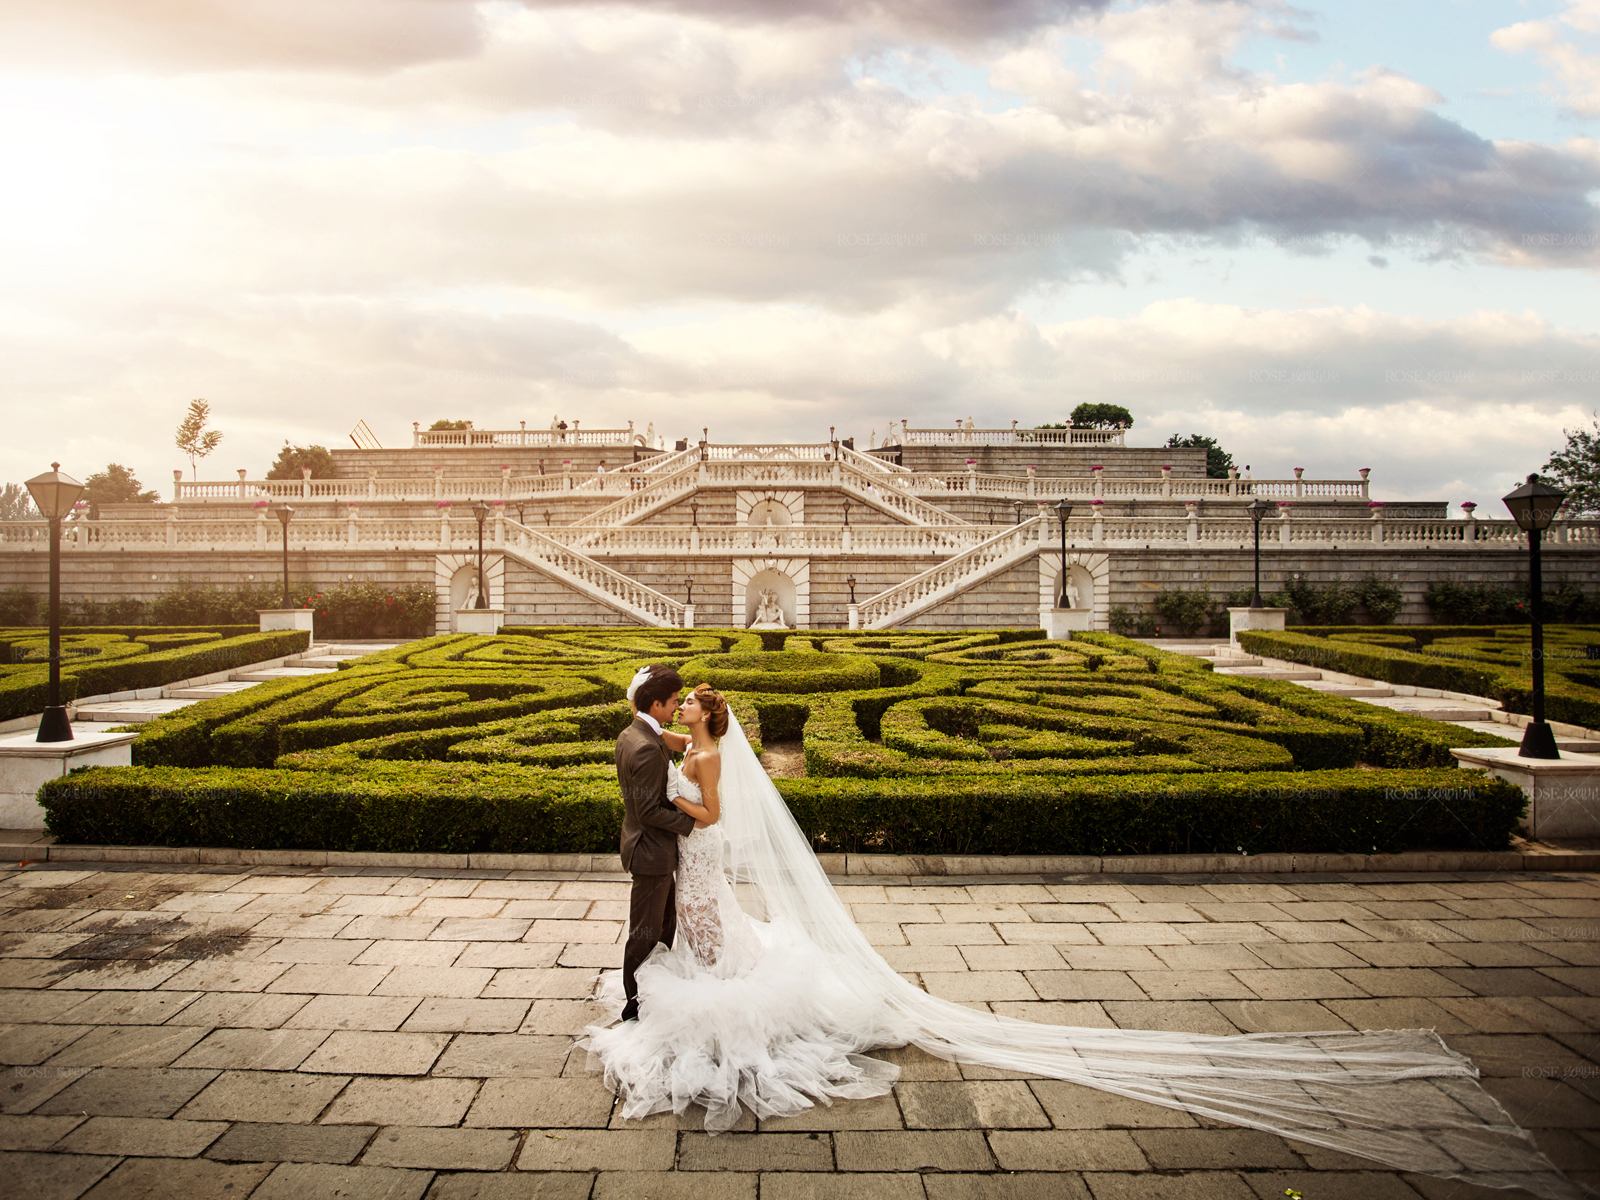 「玫瑰星座」 世界公園主題系列 歐式婚紗照